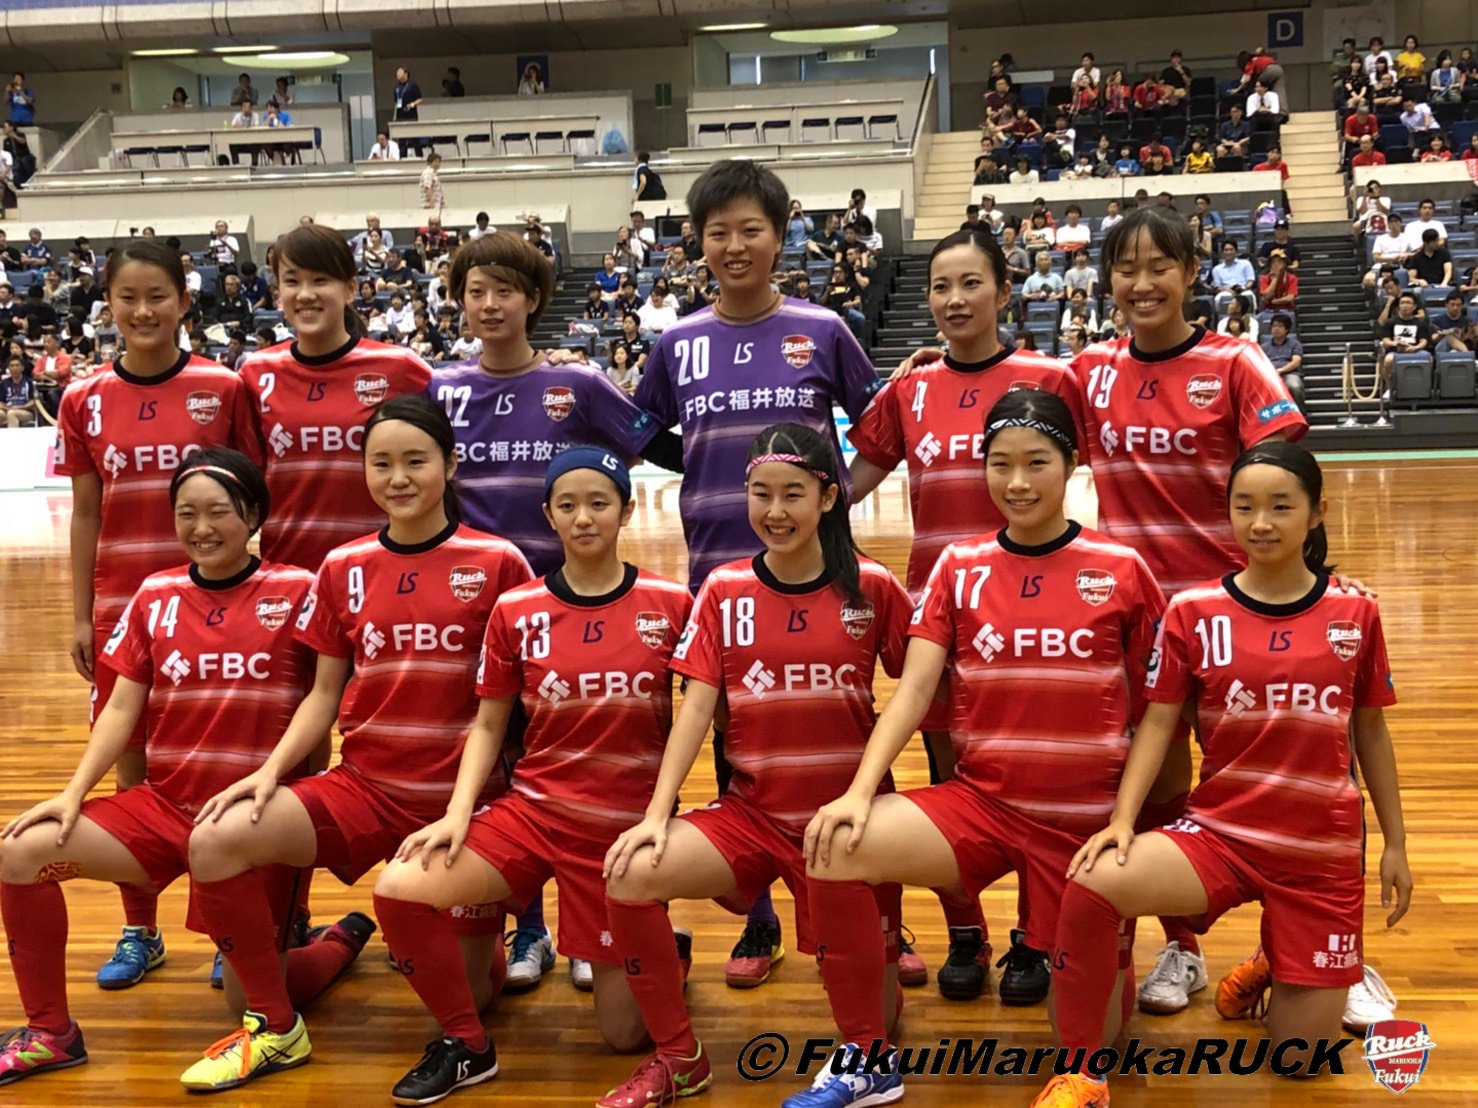 日本女子フットサルリーグ第5節結果 公式 福井丸岡ruck